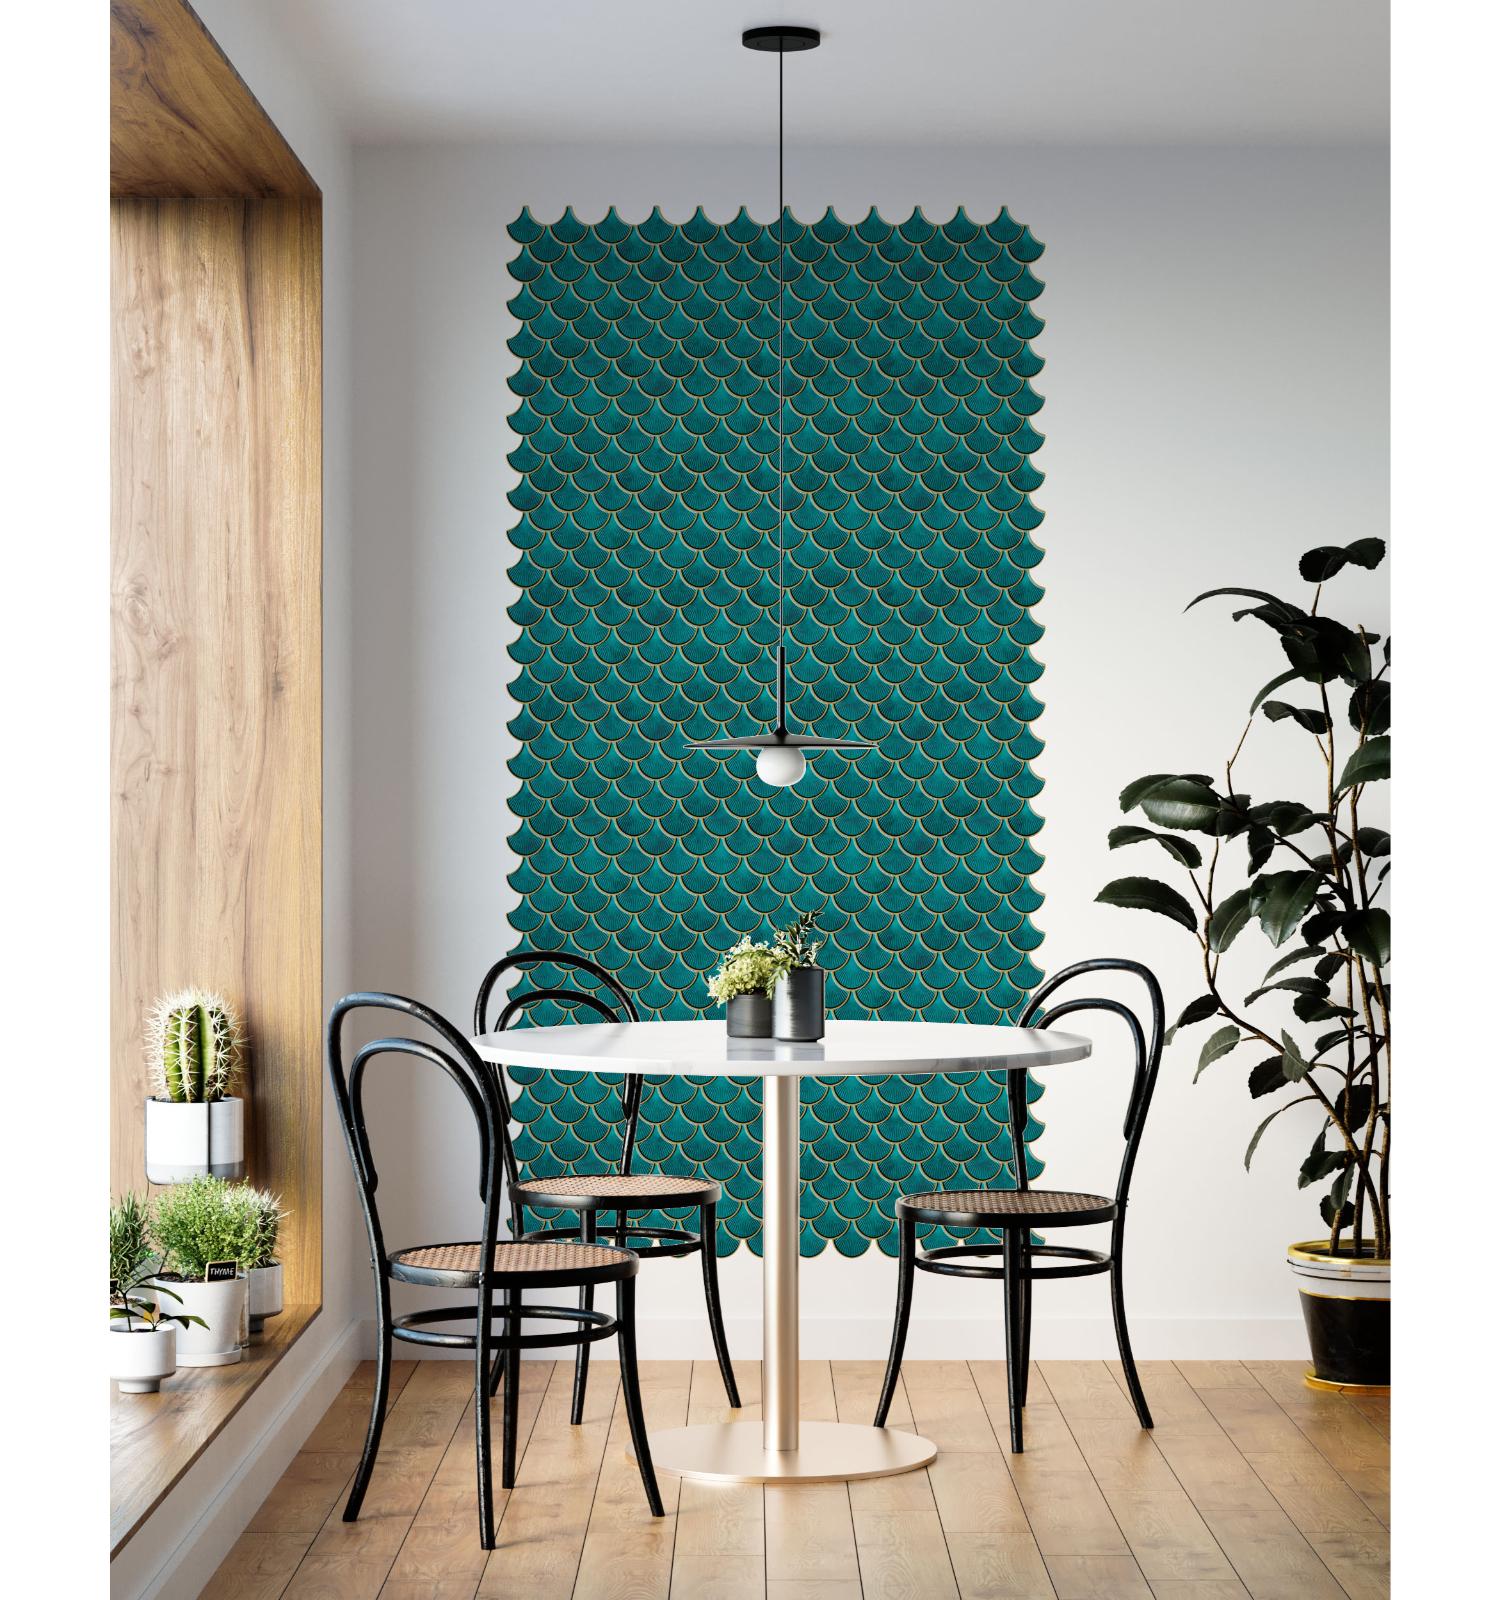 Peel and Stick Teal Blue Wall Tile | Kitchen Backsplash Tiles